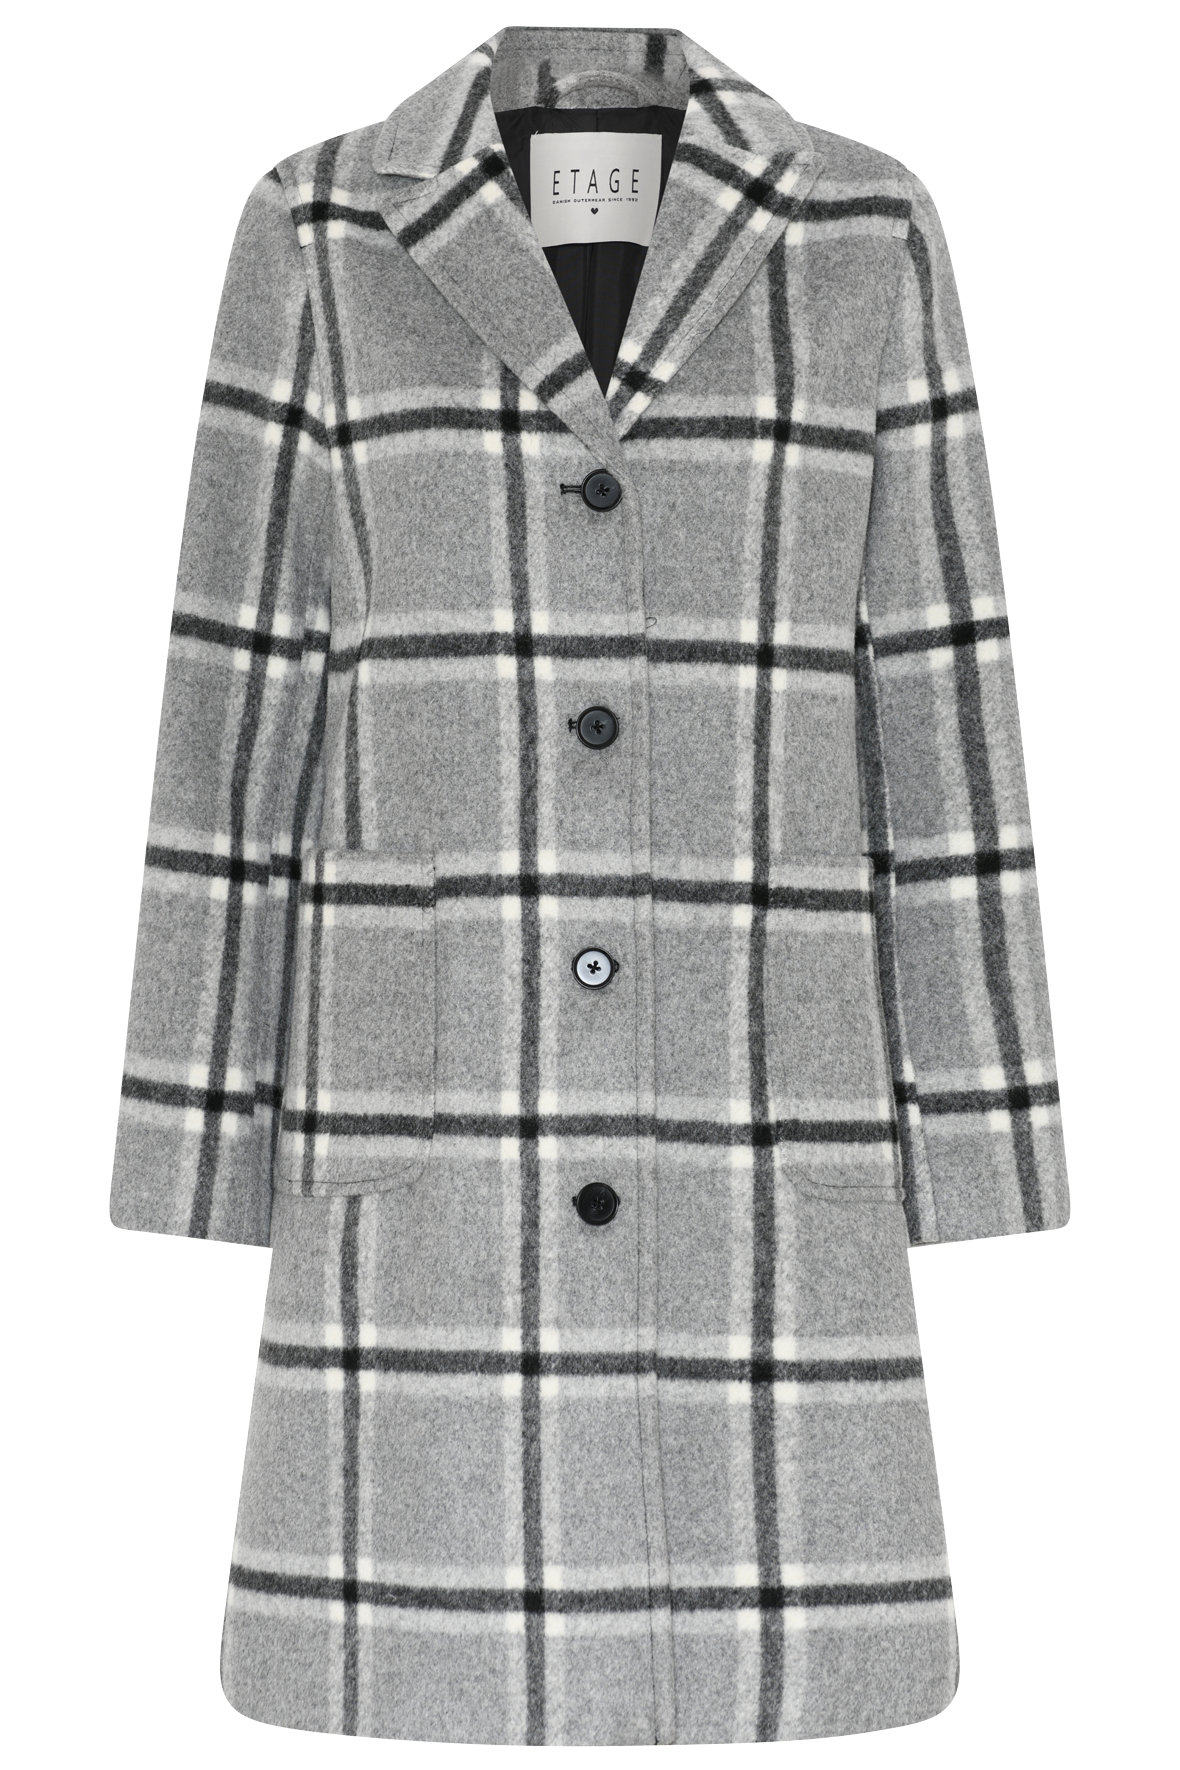 Wool Mix Jacket - ternet i grå til KVINDER - Hos Lohse